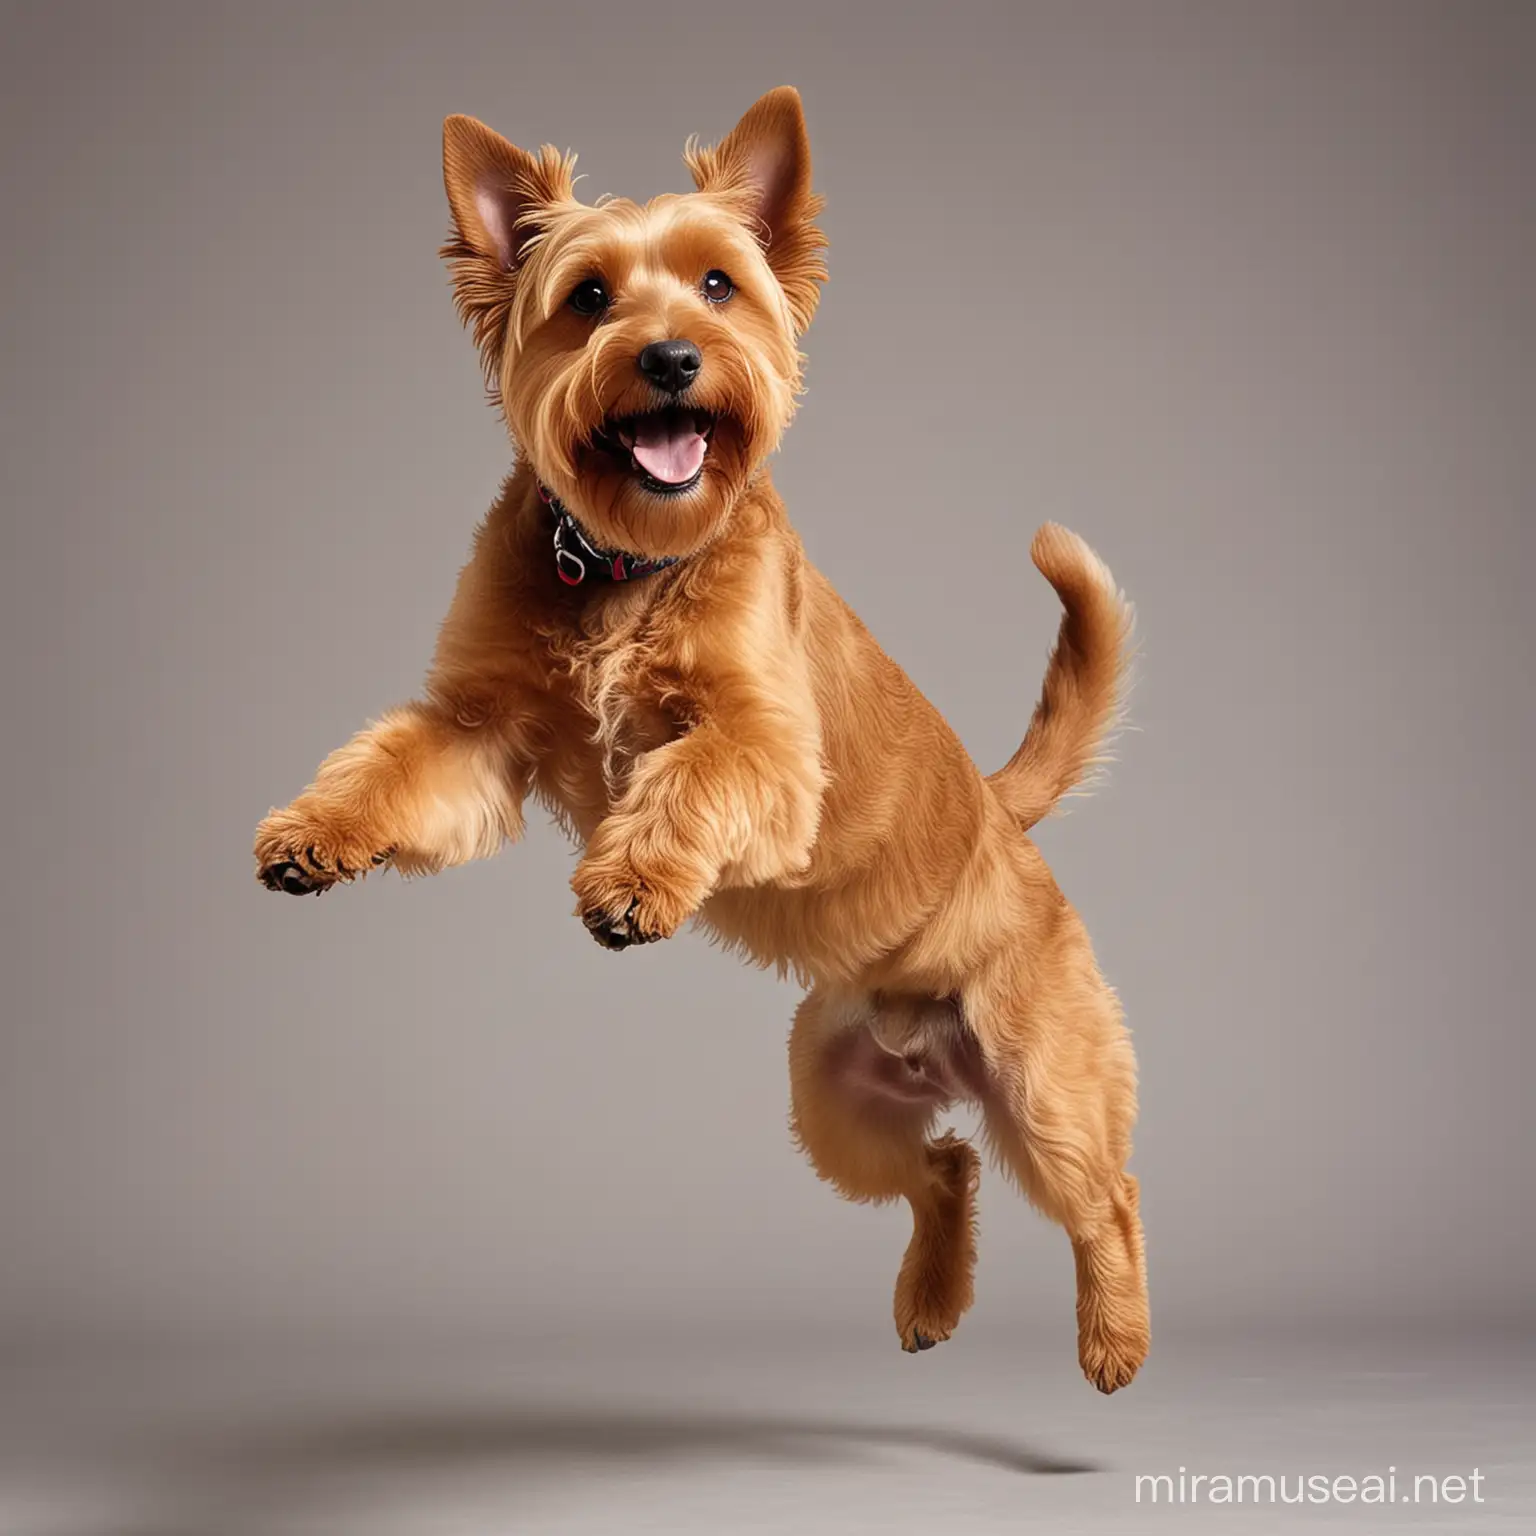 Playful Shaggy Light Brown Terrier Dog Jumping in Joyful Air